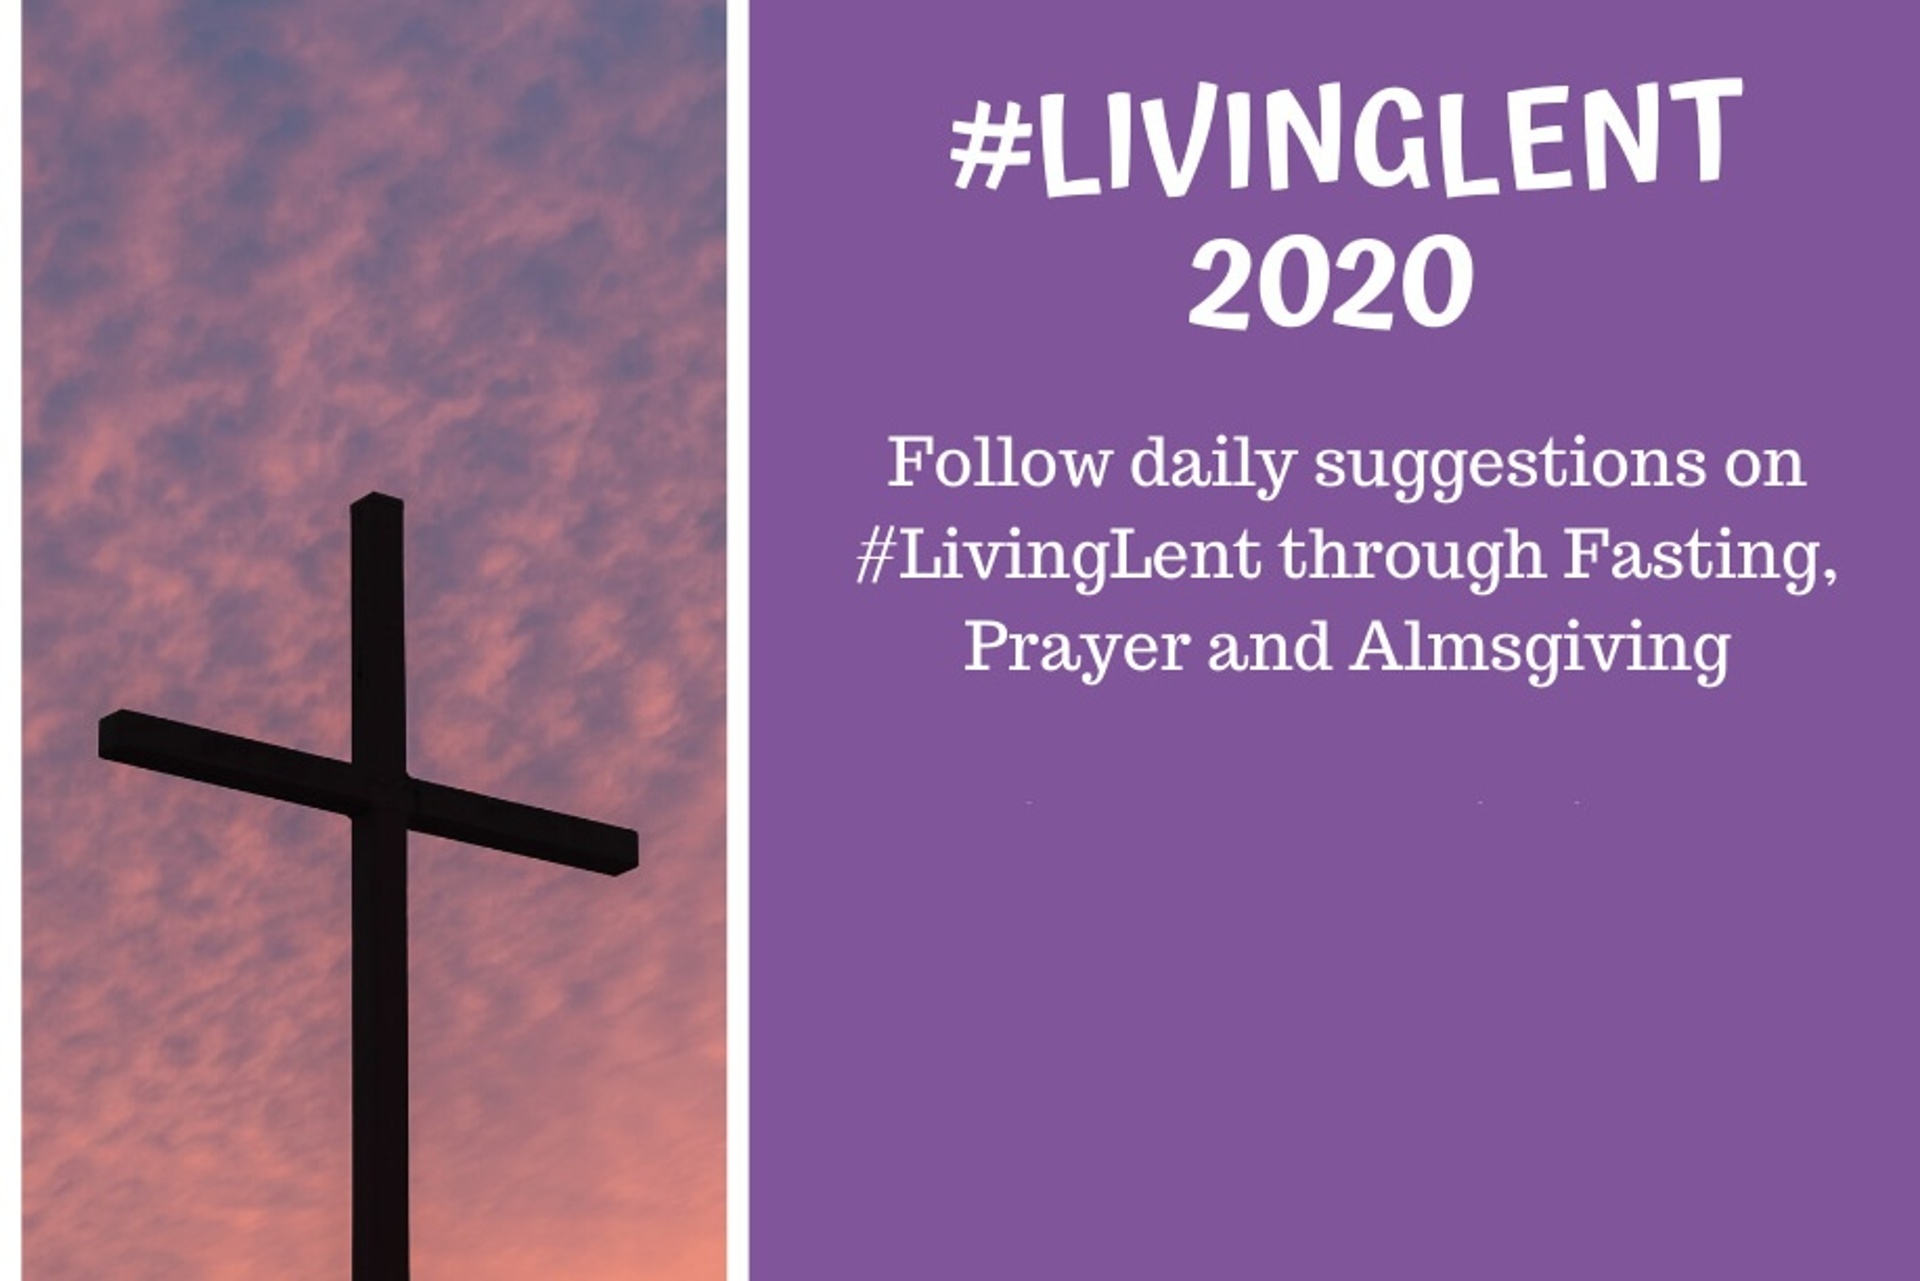 #LivingLent 2020 challenge on Facebook